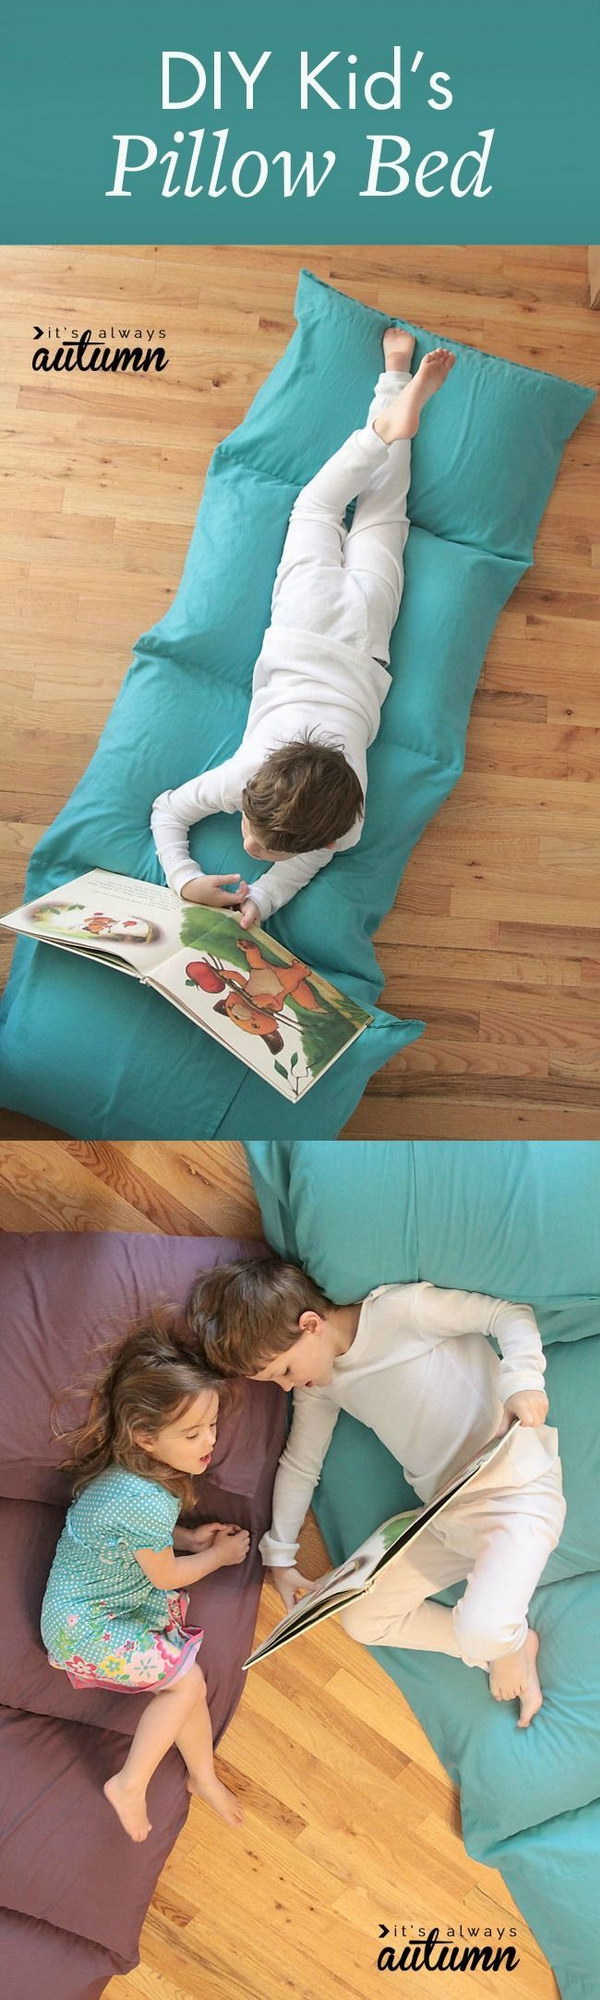 DIY Kid’s Pillow Bed 